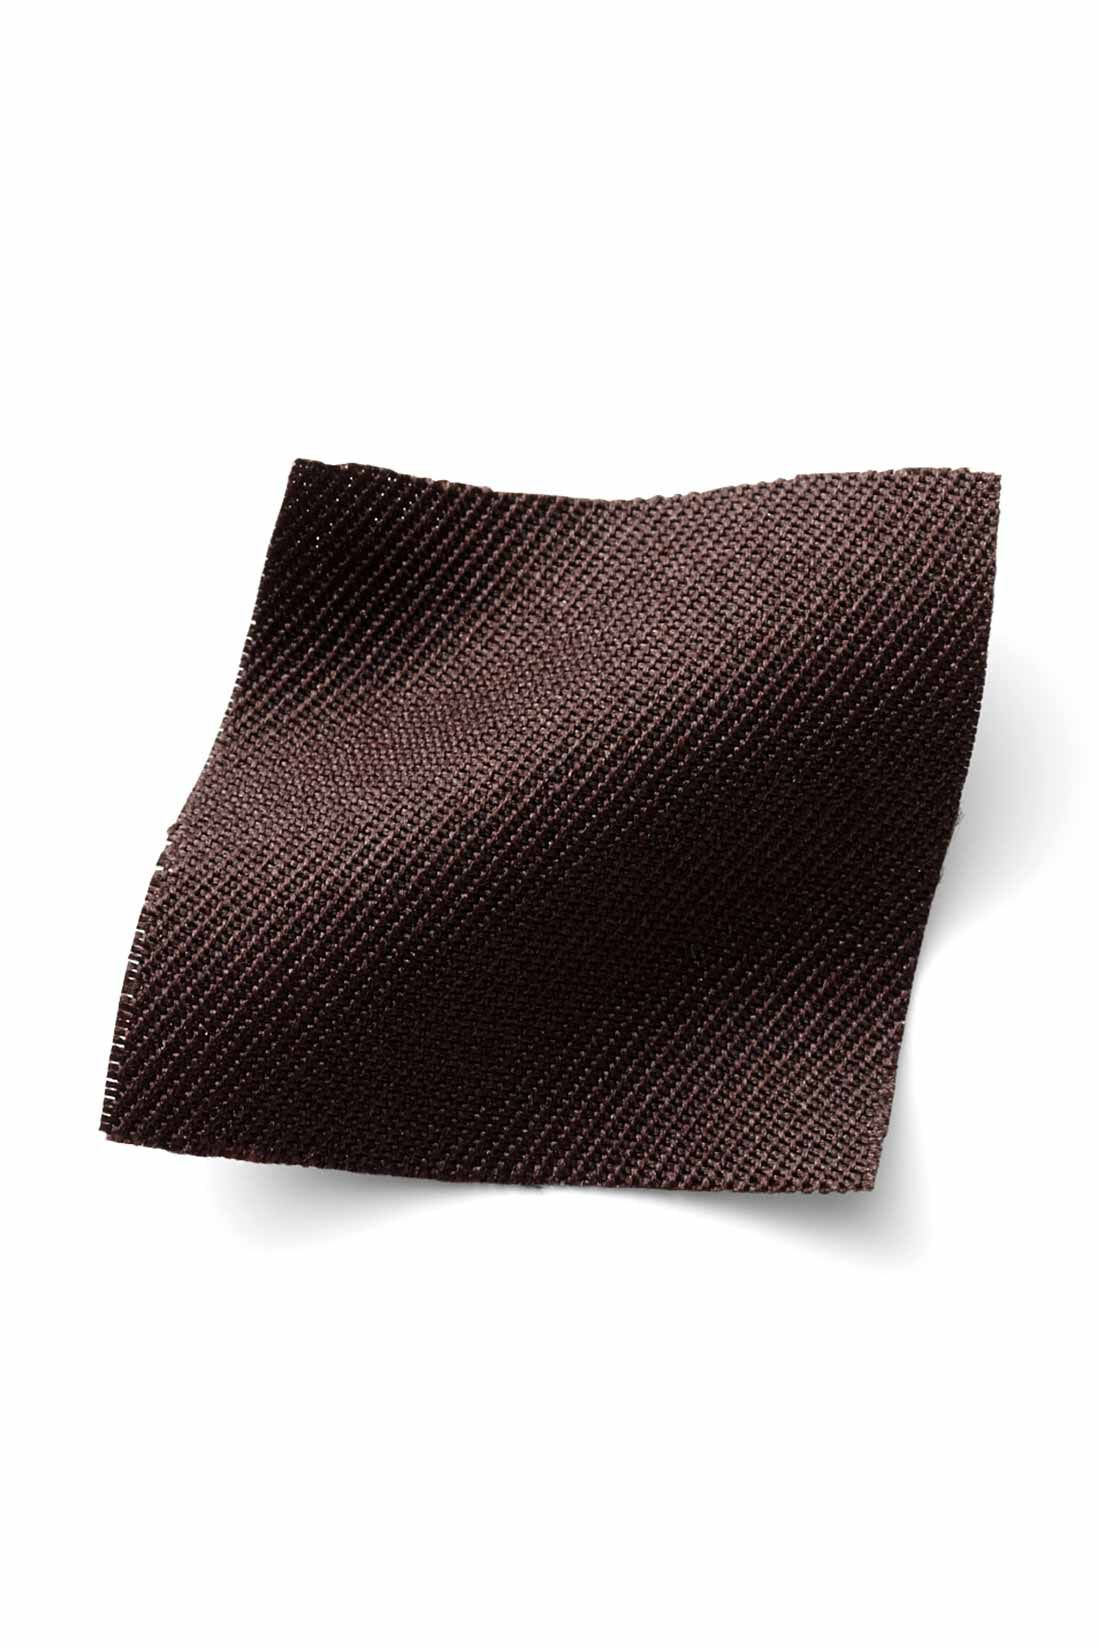 IEDIT|IEDIT[イディット]　着まわし広がる 2-WAY仕様がうれしい大人シルエットのジャンパースカート〈ブラック〉|季節を問わずはきやすい、ほどよい厚みの布はく素材。 ※お届けするカラーとは異なります。